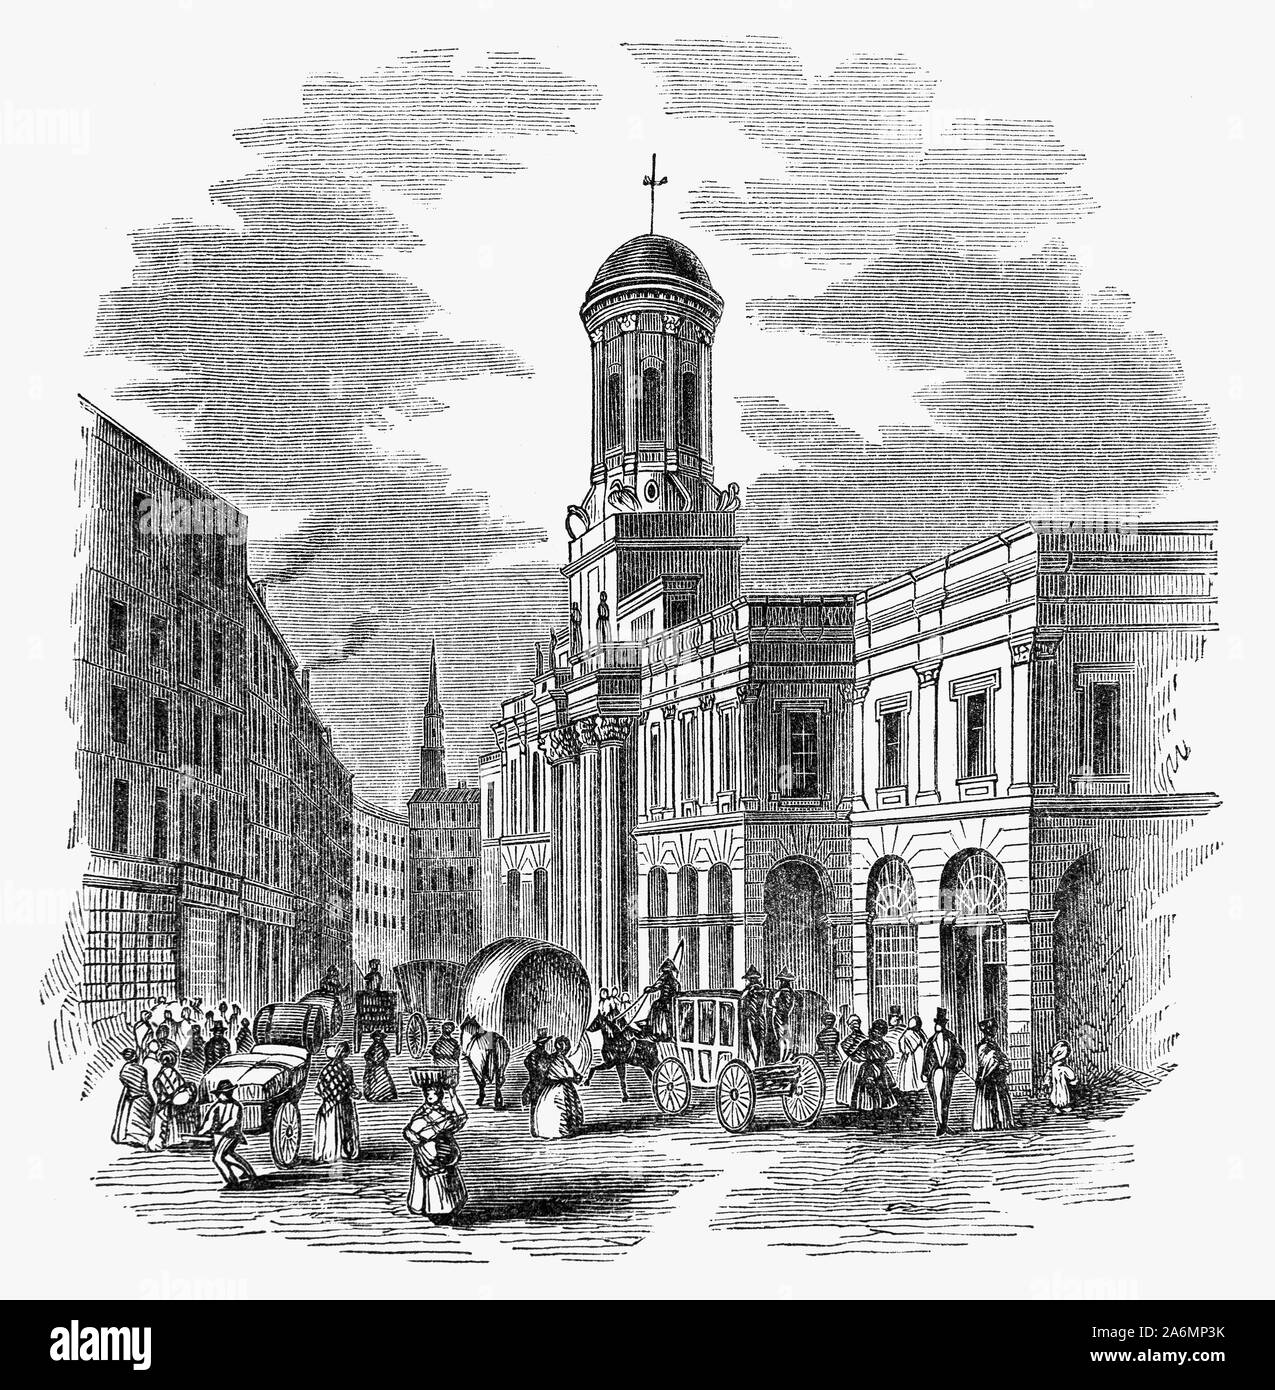 Der Royal Exchange in London wurde im 16. Jahrhundert von dem Kaufmann Sir Thomas Gresham auf Vorschlag von seinem Faktor Richard Clough als Zentrum des Handels für die Stadt London zu handeln gegründet. Gresham's ursprüngliche Gebäude wurde in dem großen Brand von London 1666 zerstört. Das zweite Gebäude auf der Seite flankiert von Cornhill und Threadneedle Street von Edward Jarman entworfen und 1669 eröffnet, aber auch abgebrannt, am 10. Januar 1838. Sie war von dem Lloyd's Versicherungsmarkt, der nach dem Brand 1838 wurde gezwungen, vorübergehend zur South Sea Haus zu bewegen. Stockfoto